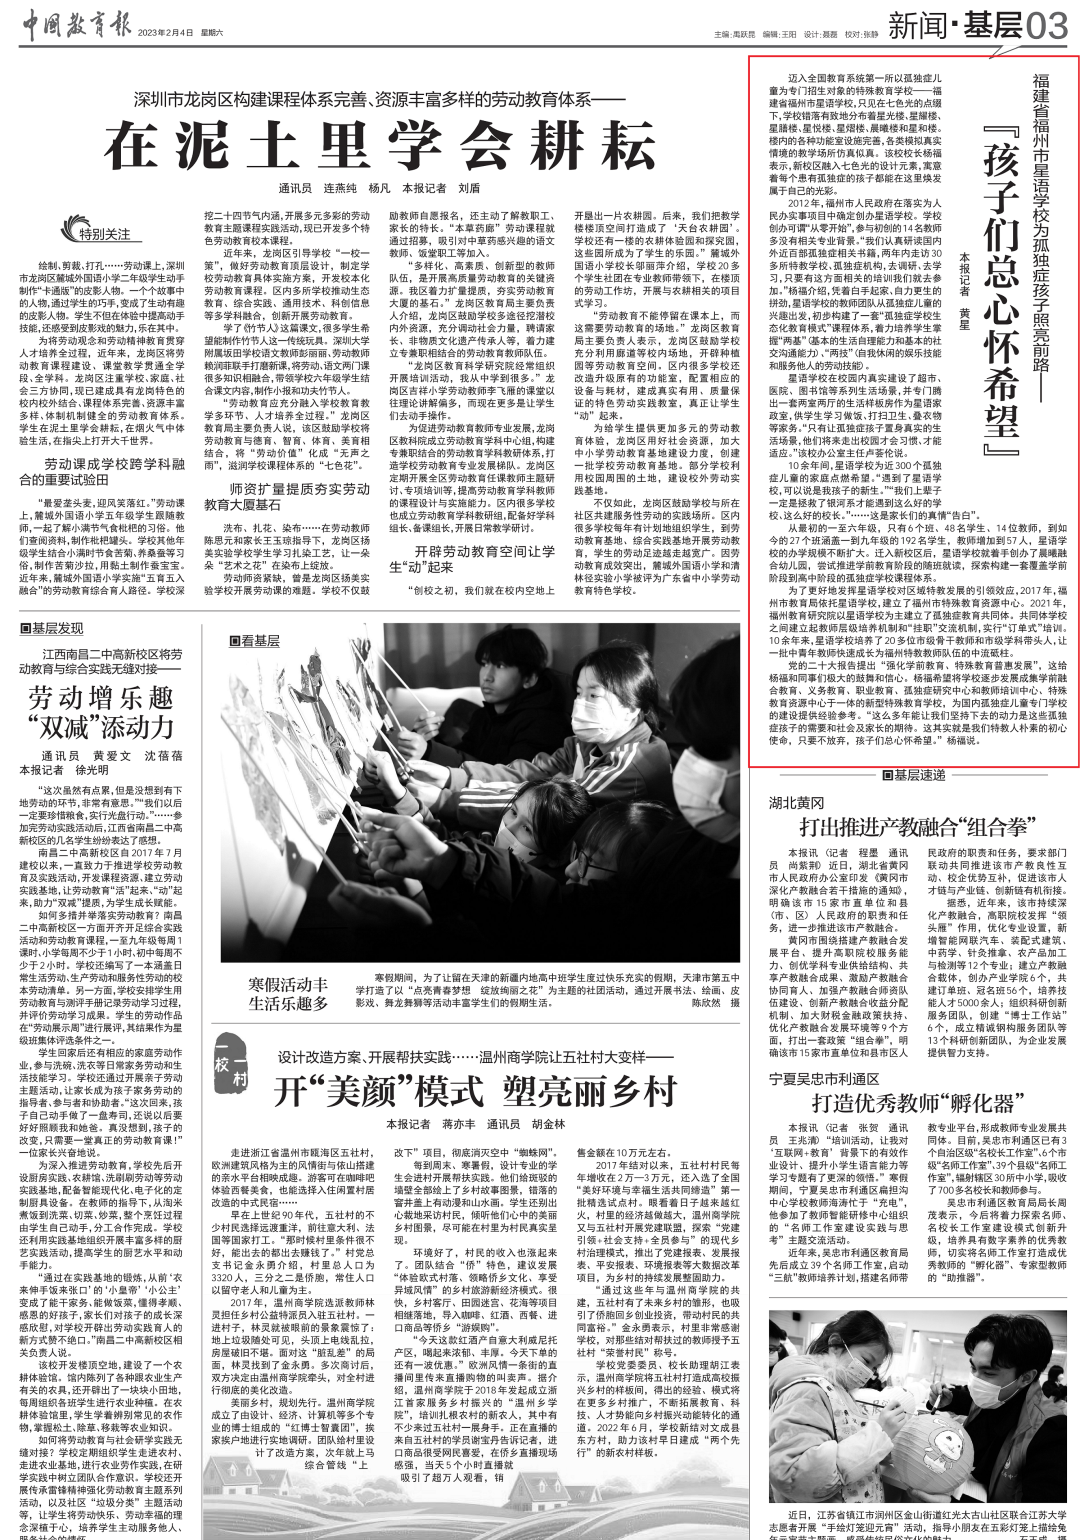 《中国教育报》报道福建省福州市星语学校为孤独症孩子照亮前路